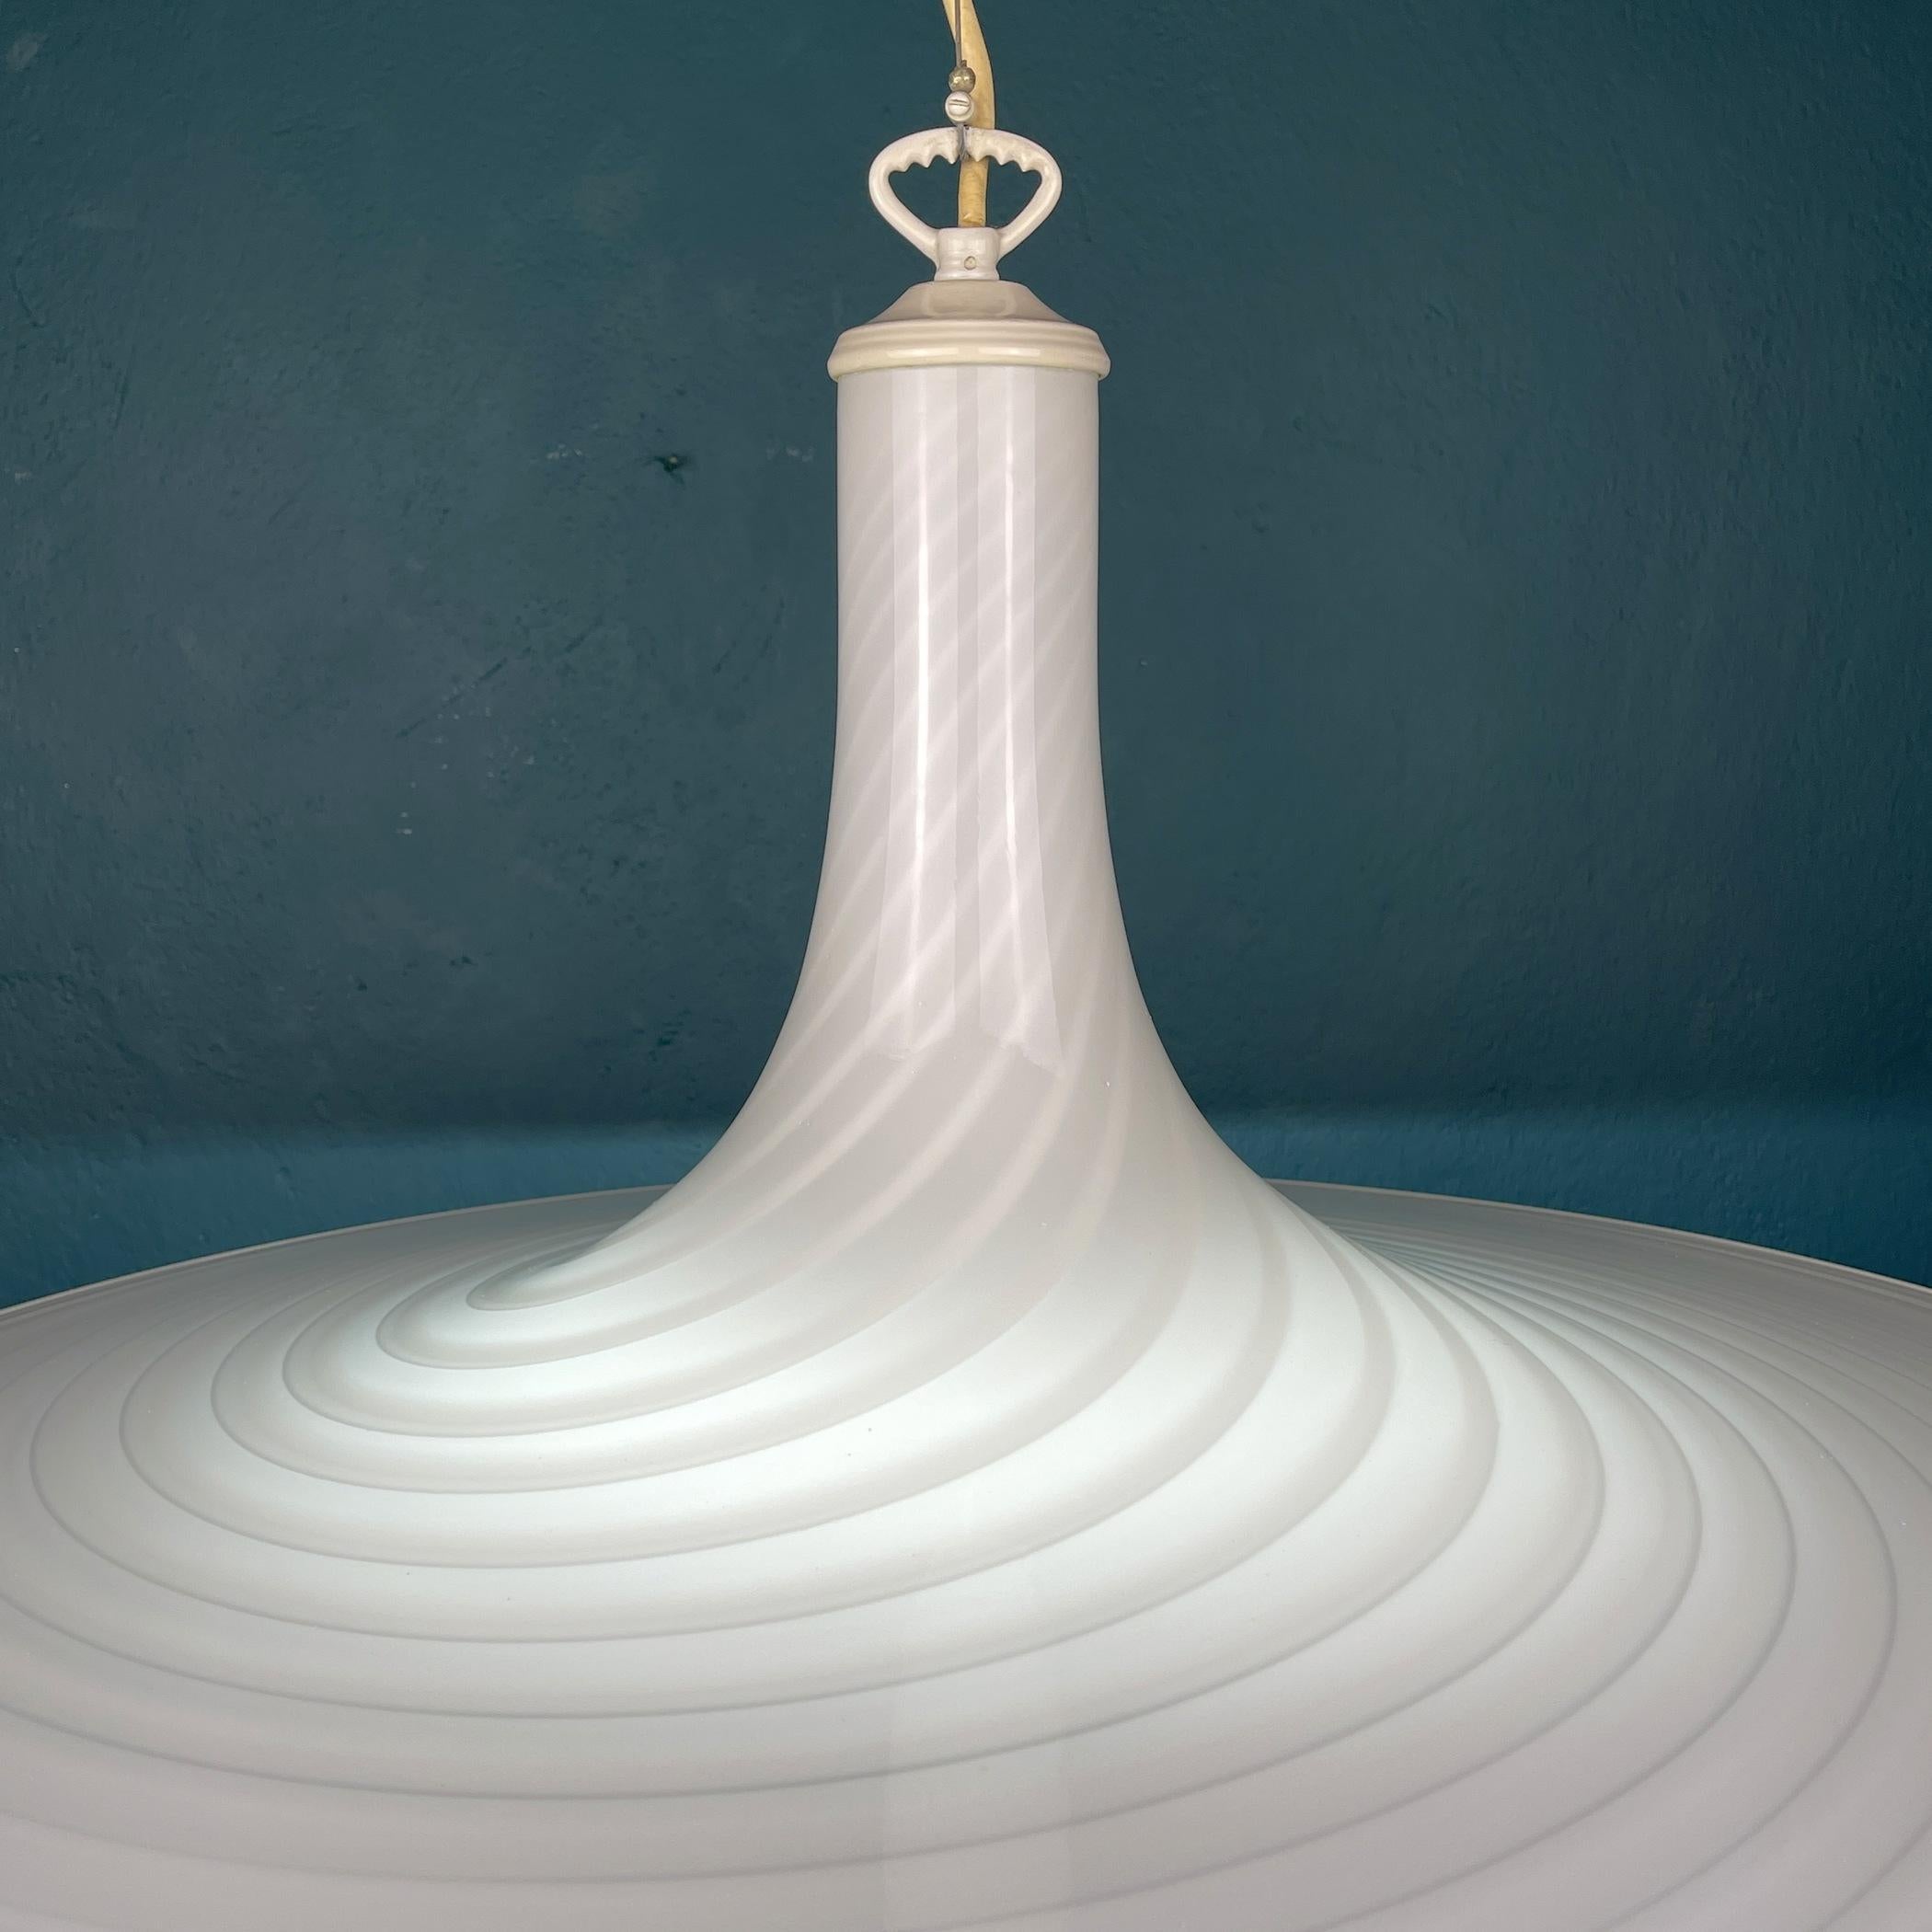 Late 20th Century Vintage Swirl Murano Glass Pendant Lamp Vetri Murano Italy 1970s